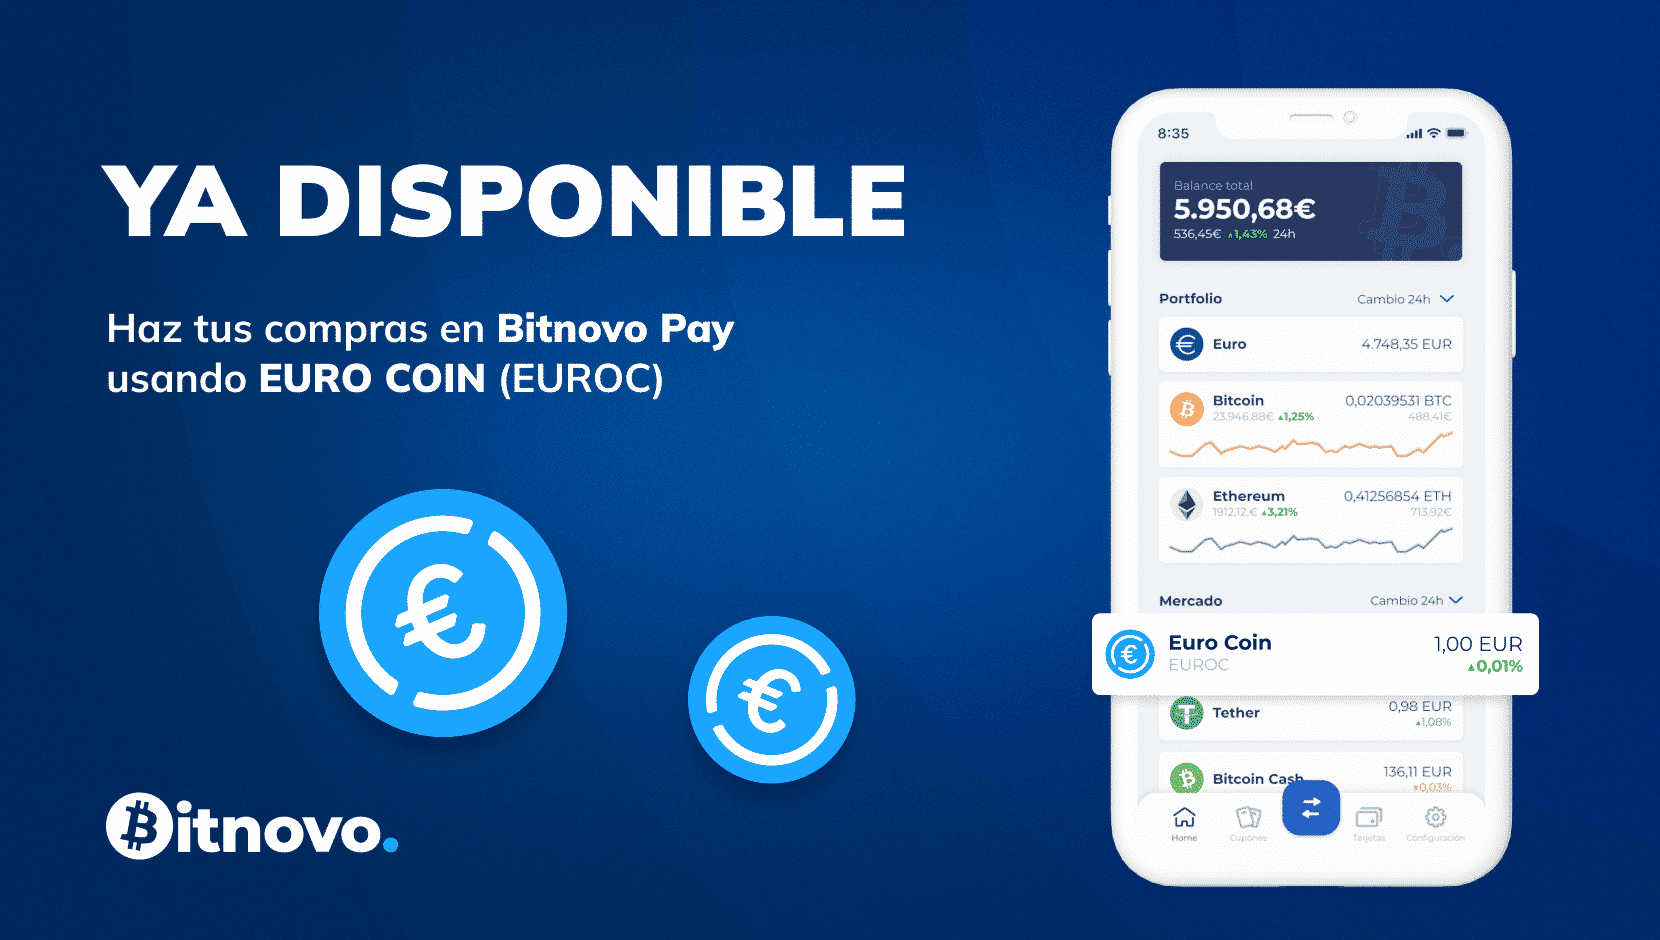 Eurocoin (EUROC) ya está disponible en Bitnovo